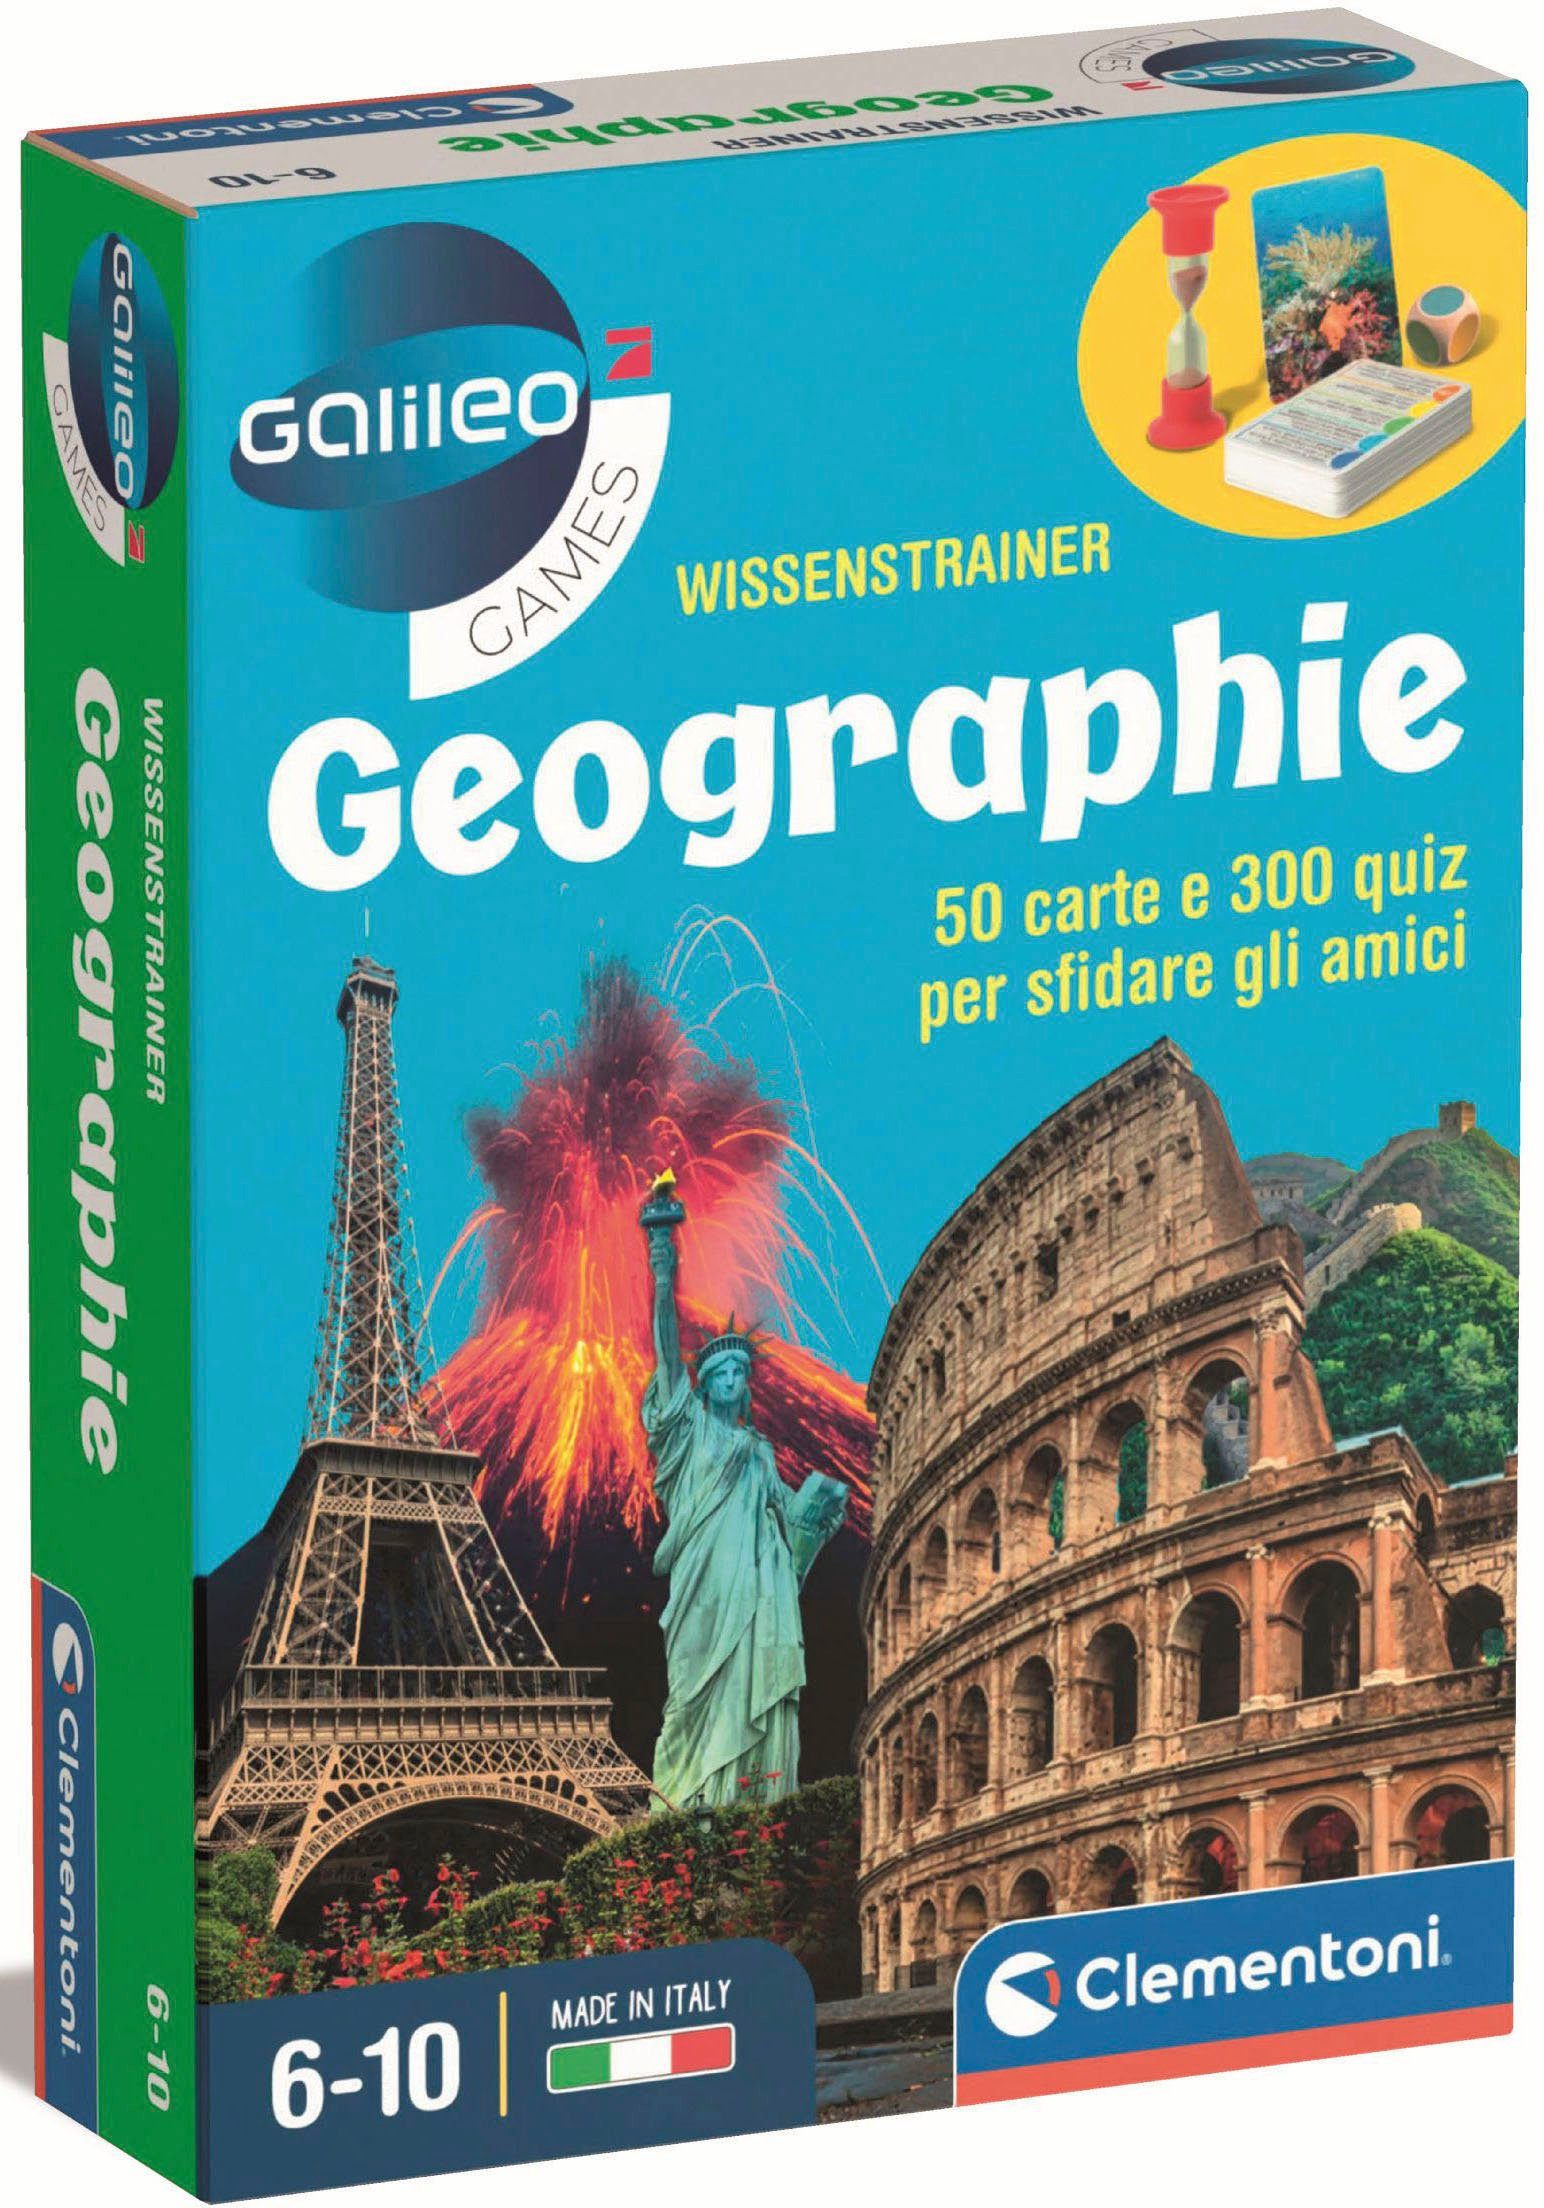 Clementoni® Spiel, Quizspiel Galileo, Wissenstrainer Geographie, Made in Europe